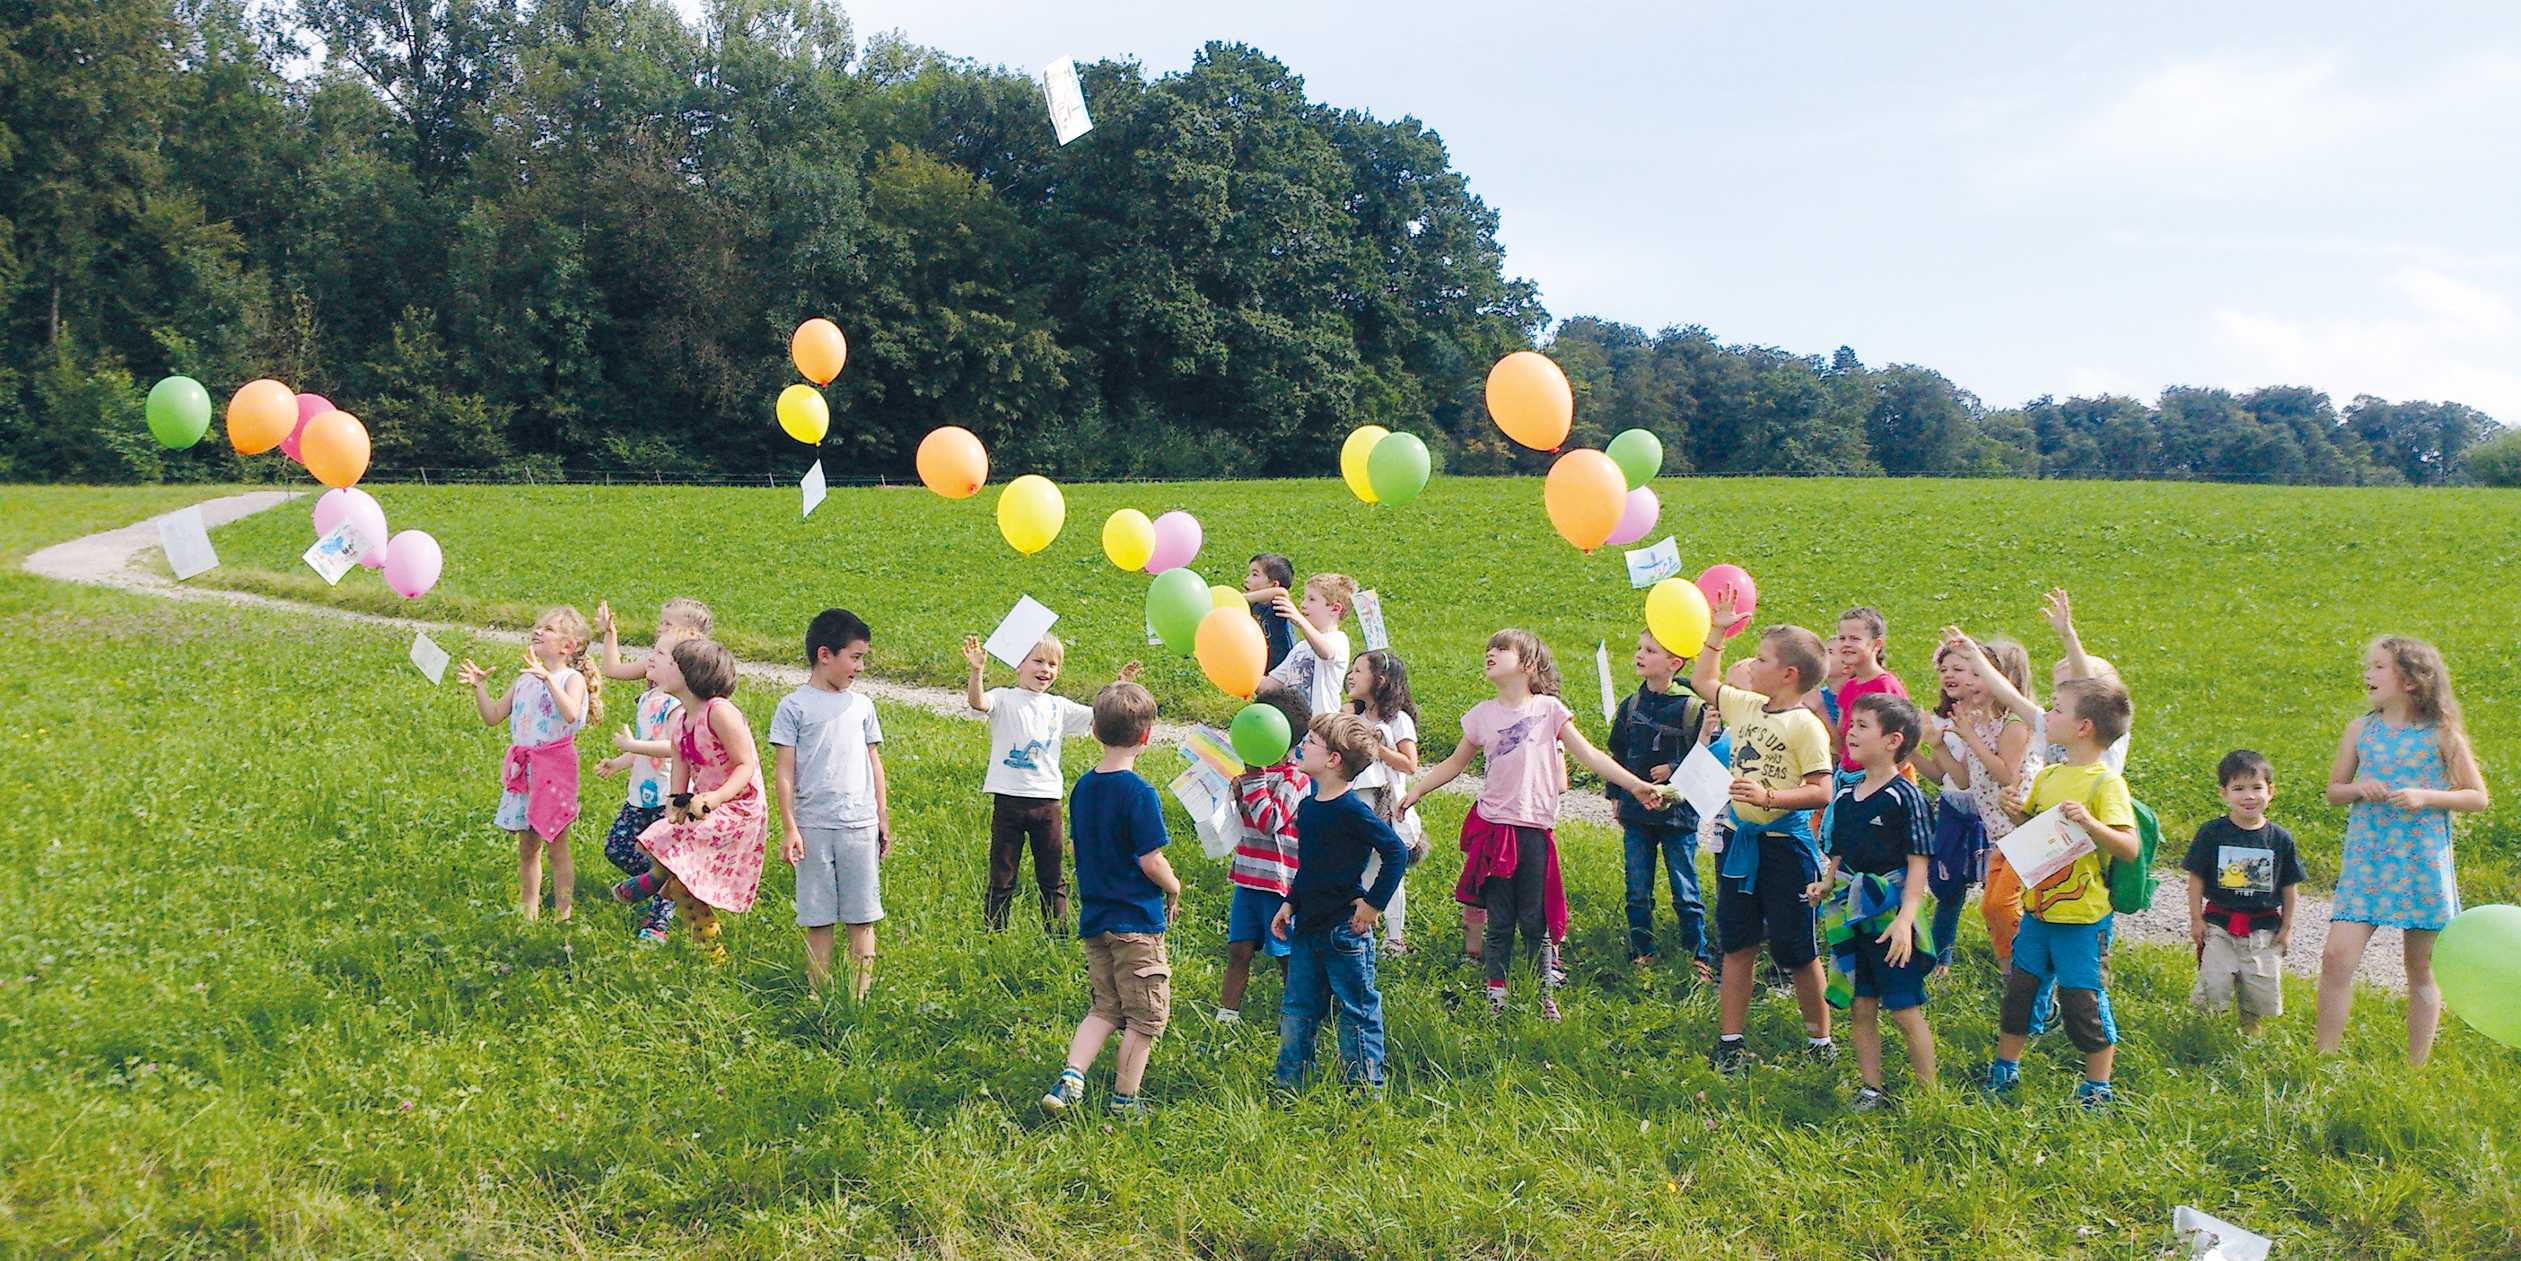 Kinder spielen mit bunten Ballons.